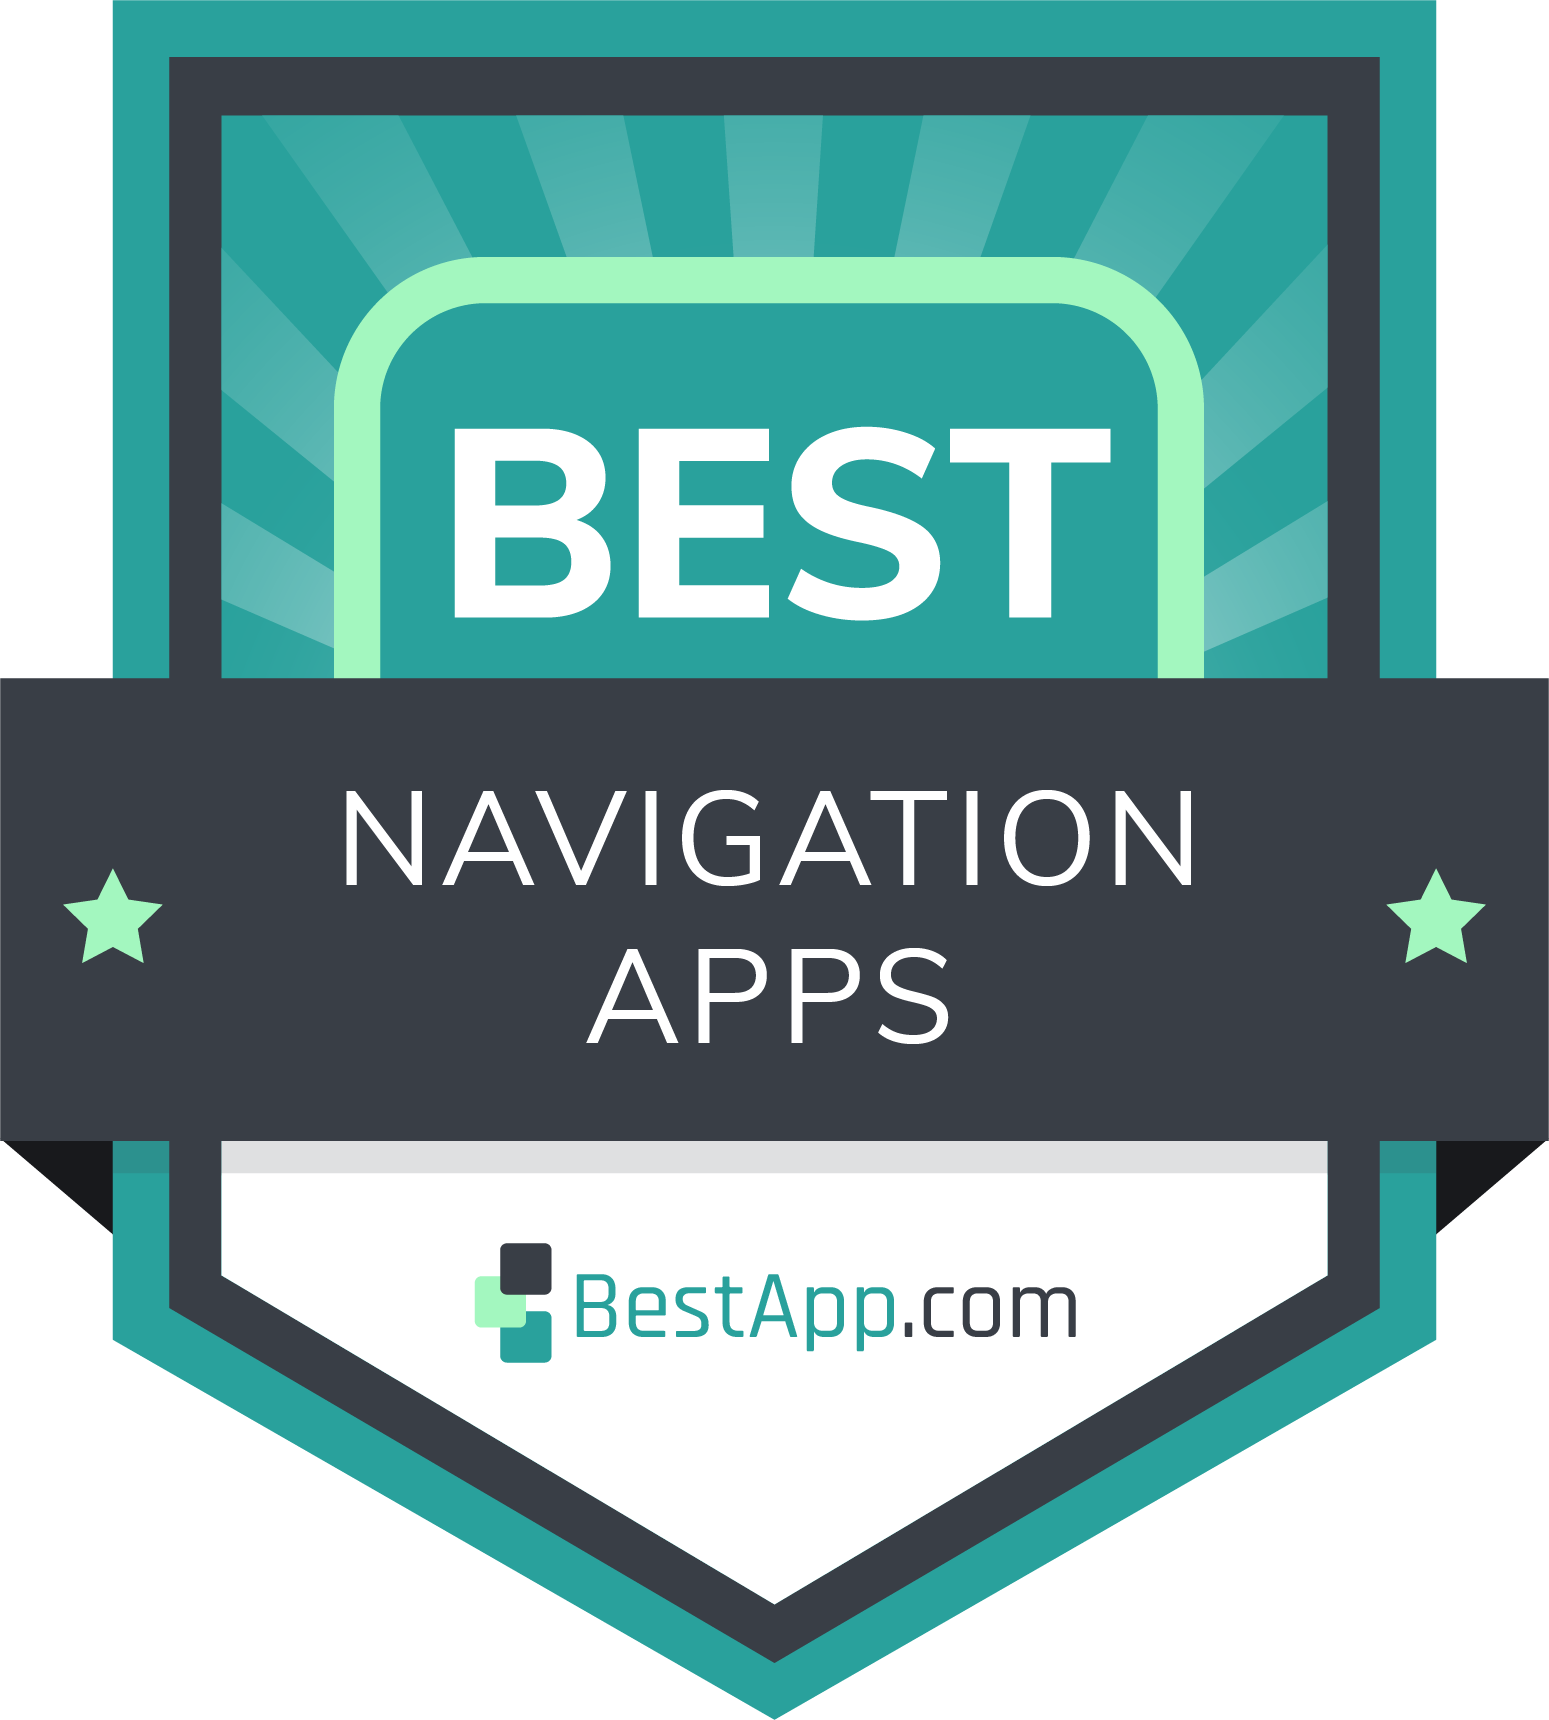 Best Navigation Apps Badge